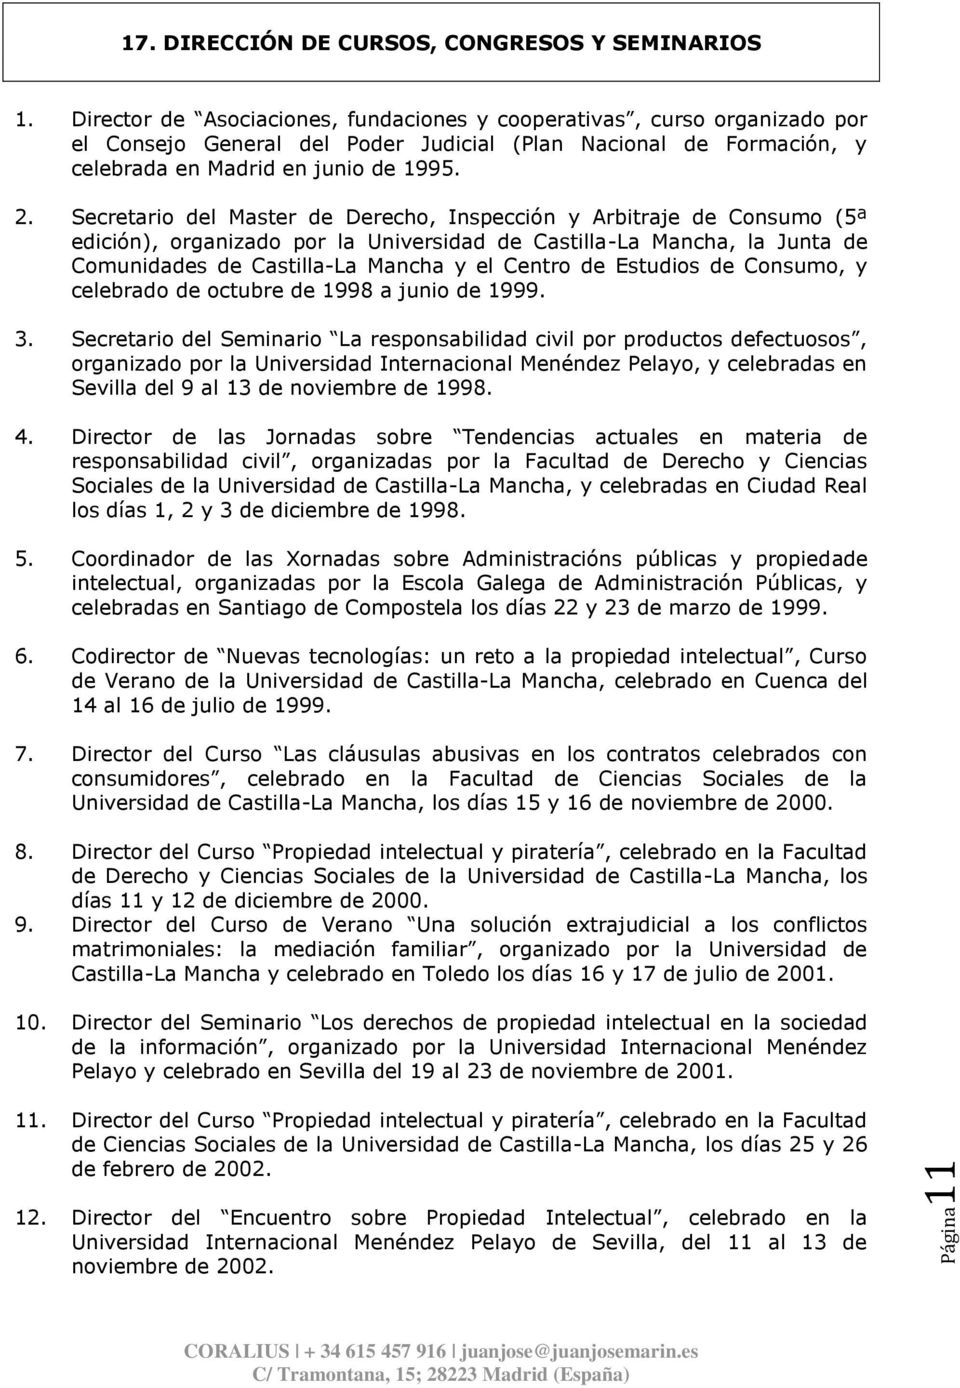 Secretario del Master de Derecho, Inspección y Arbitraje de Consumo (5ª edición), organizado por la Universidad de Castilla-La Mancha, la Junta de Comunidades de Castilla-La Mancha y el Centro de